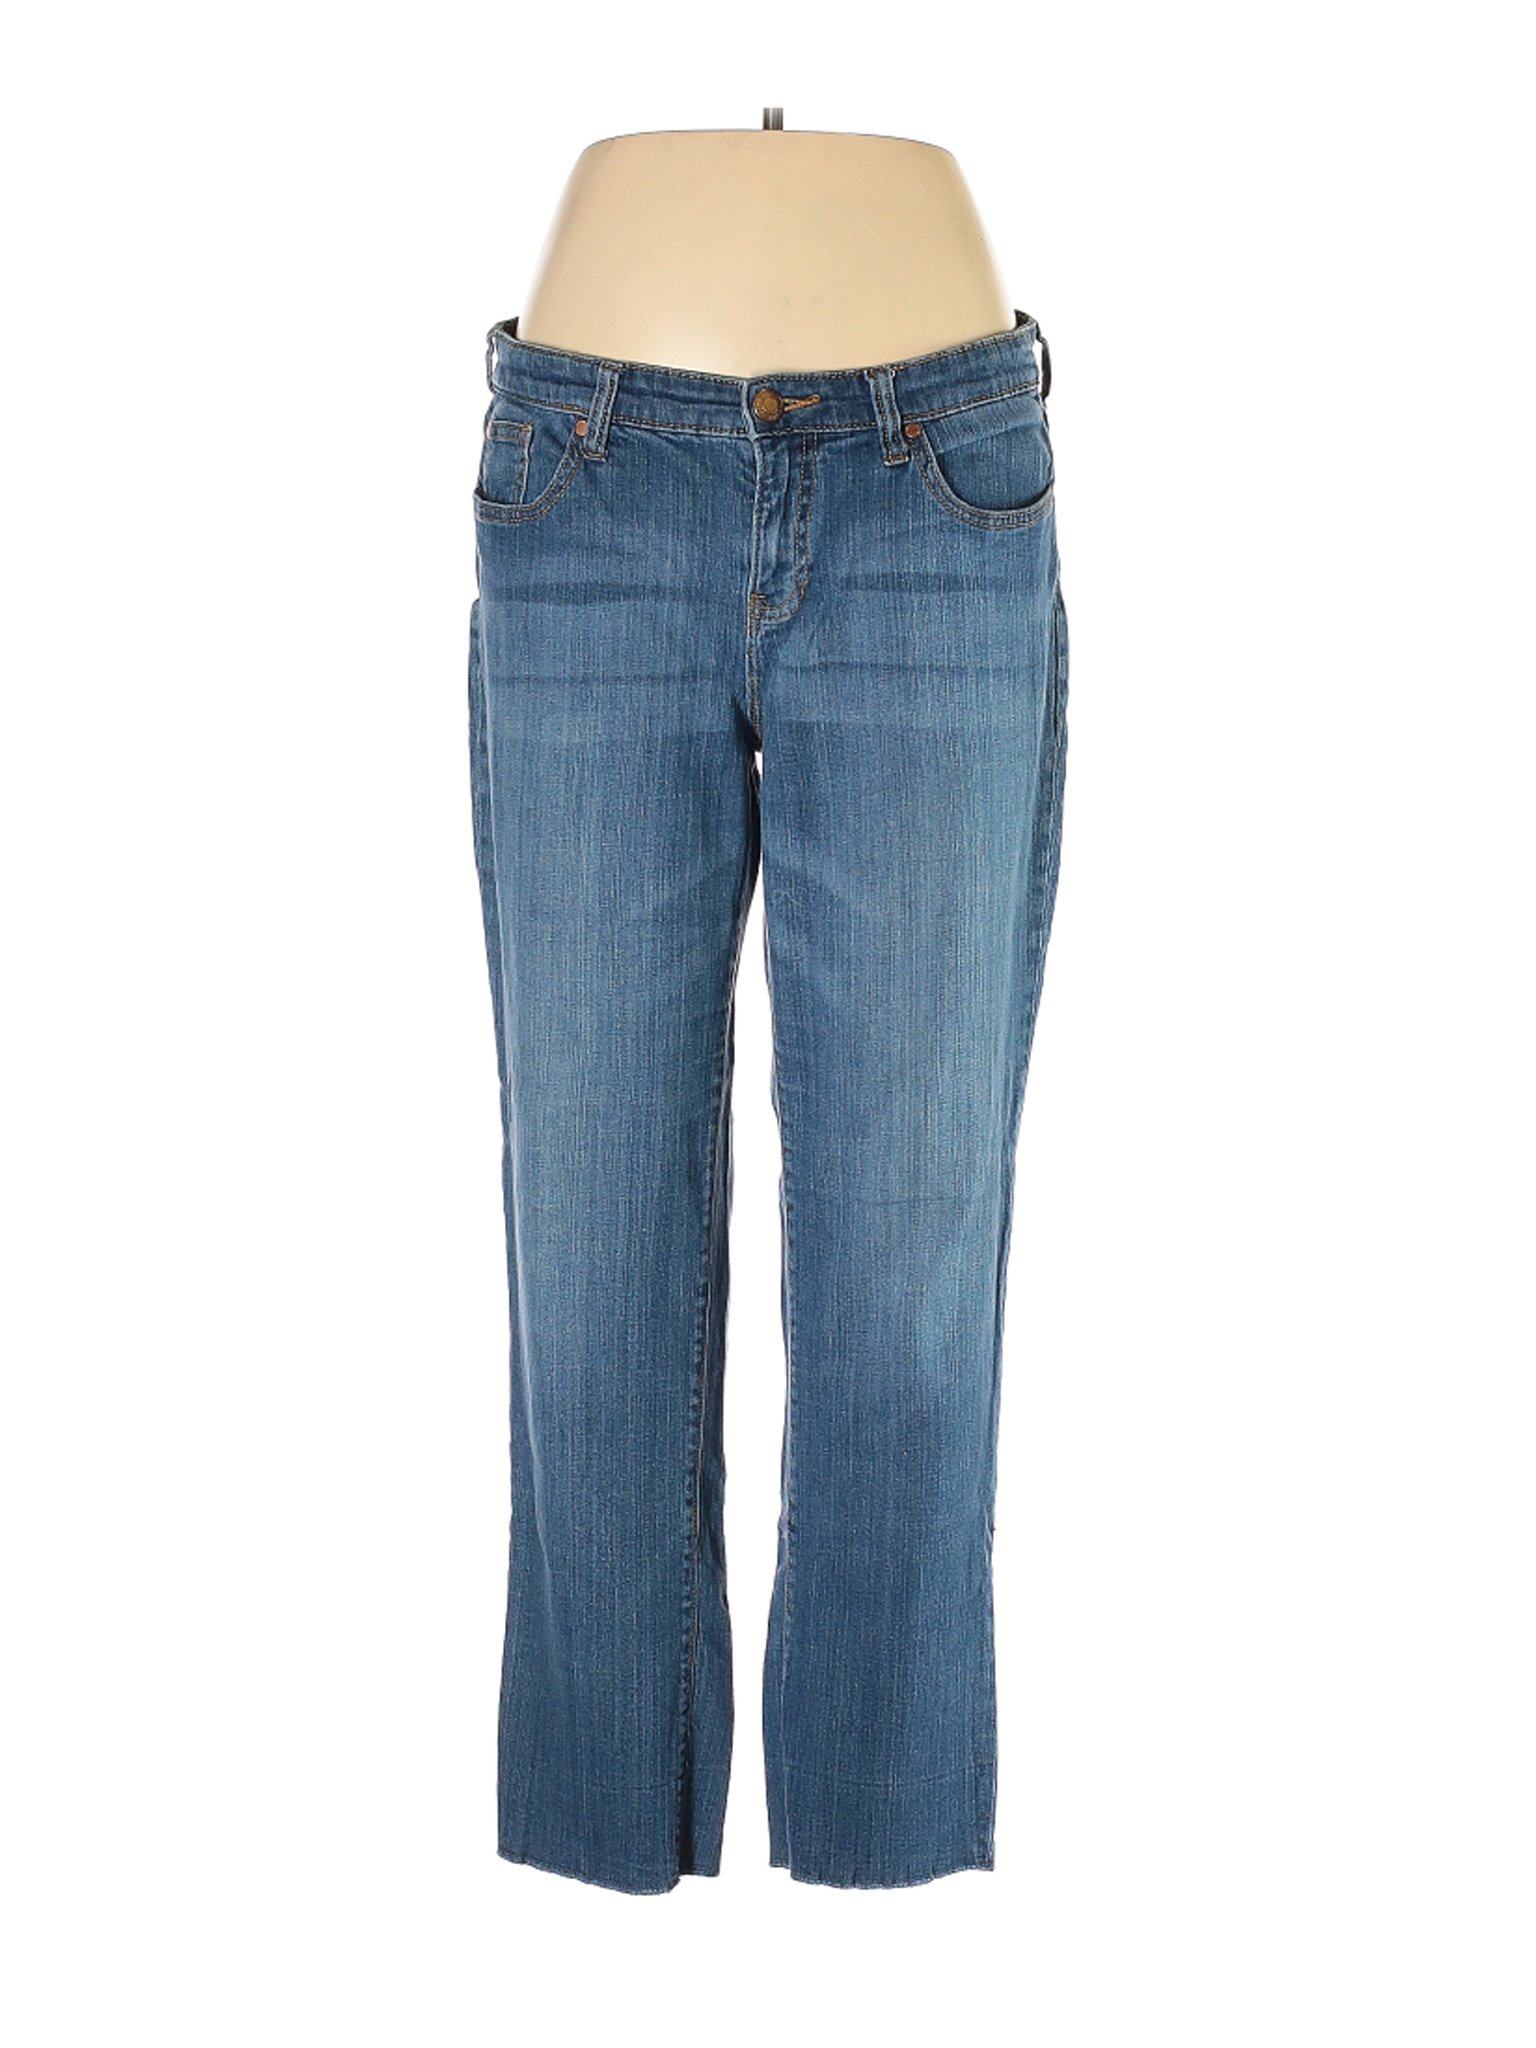 Gap Outlet Women Blue Jeans 12 | eBay